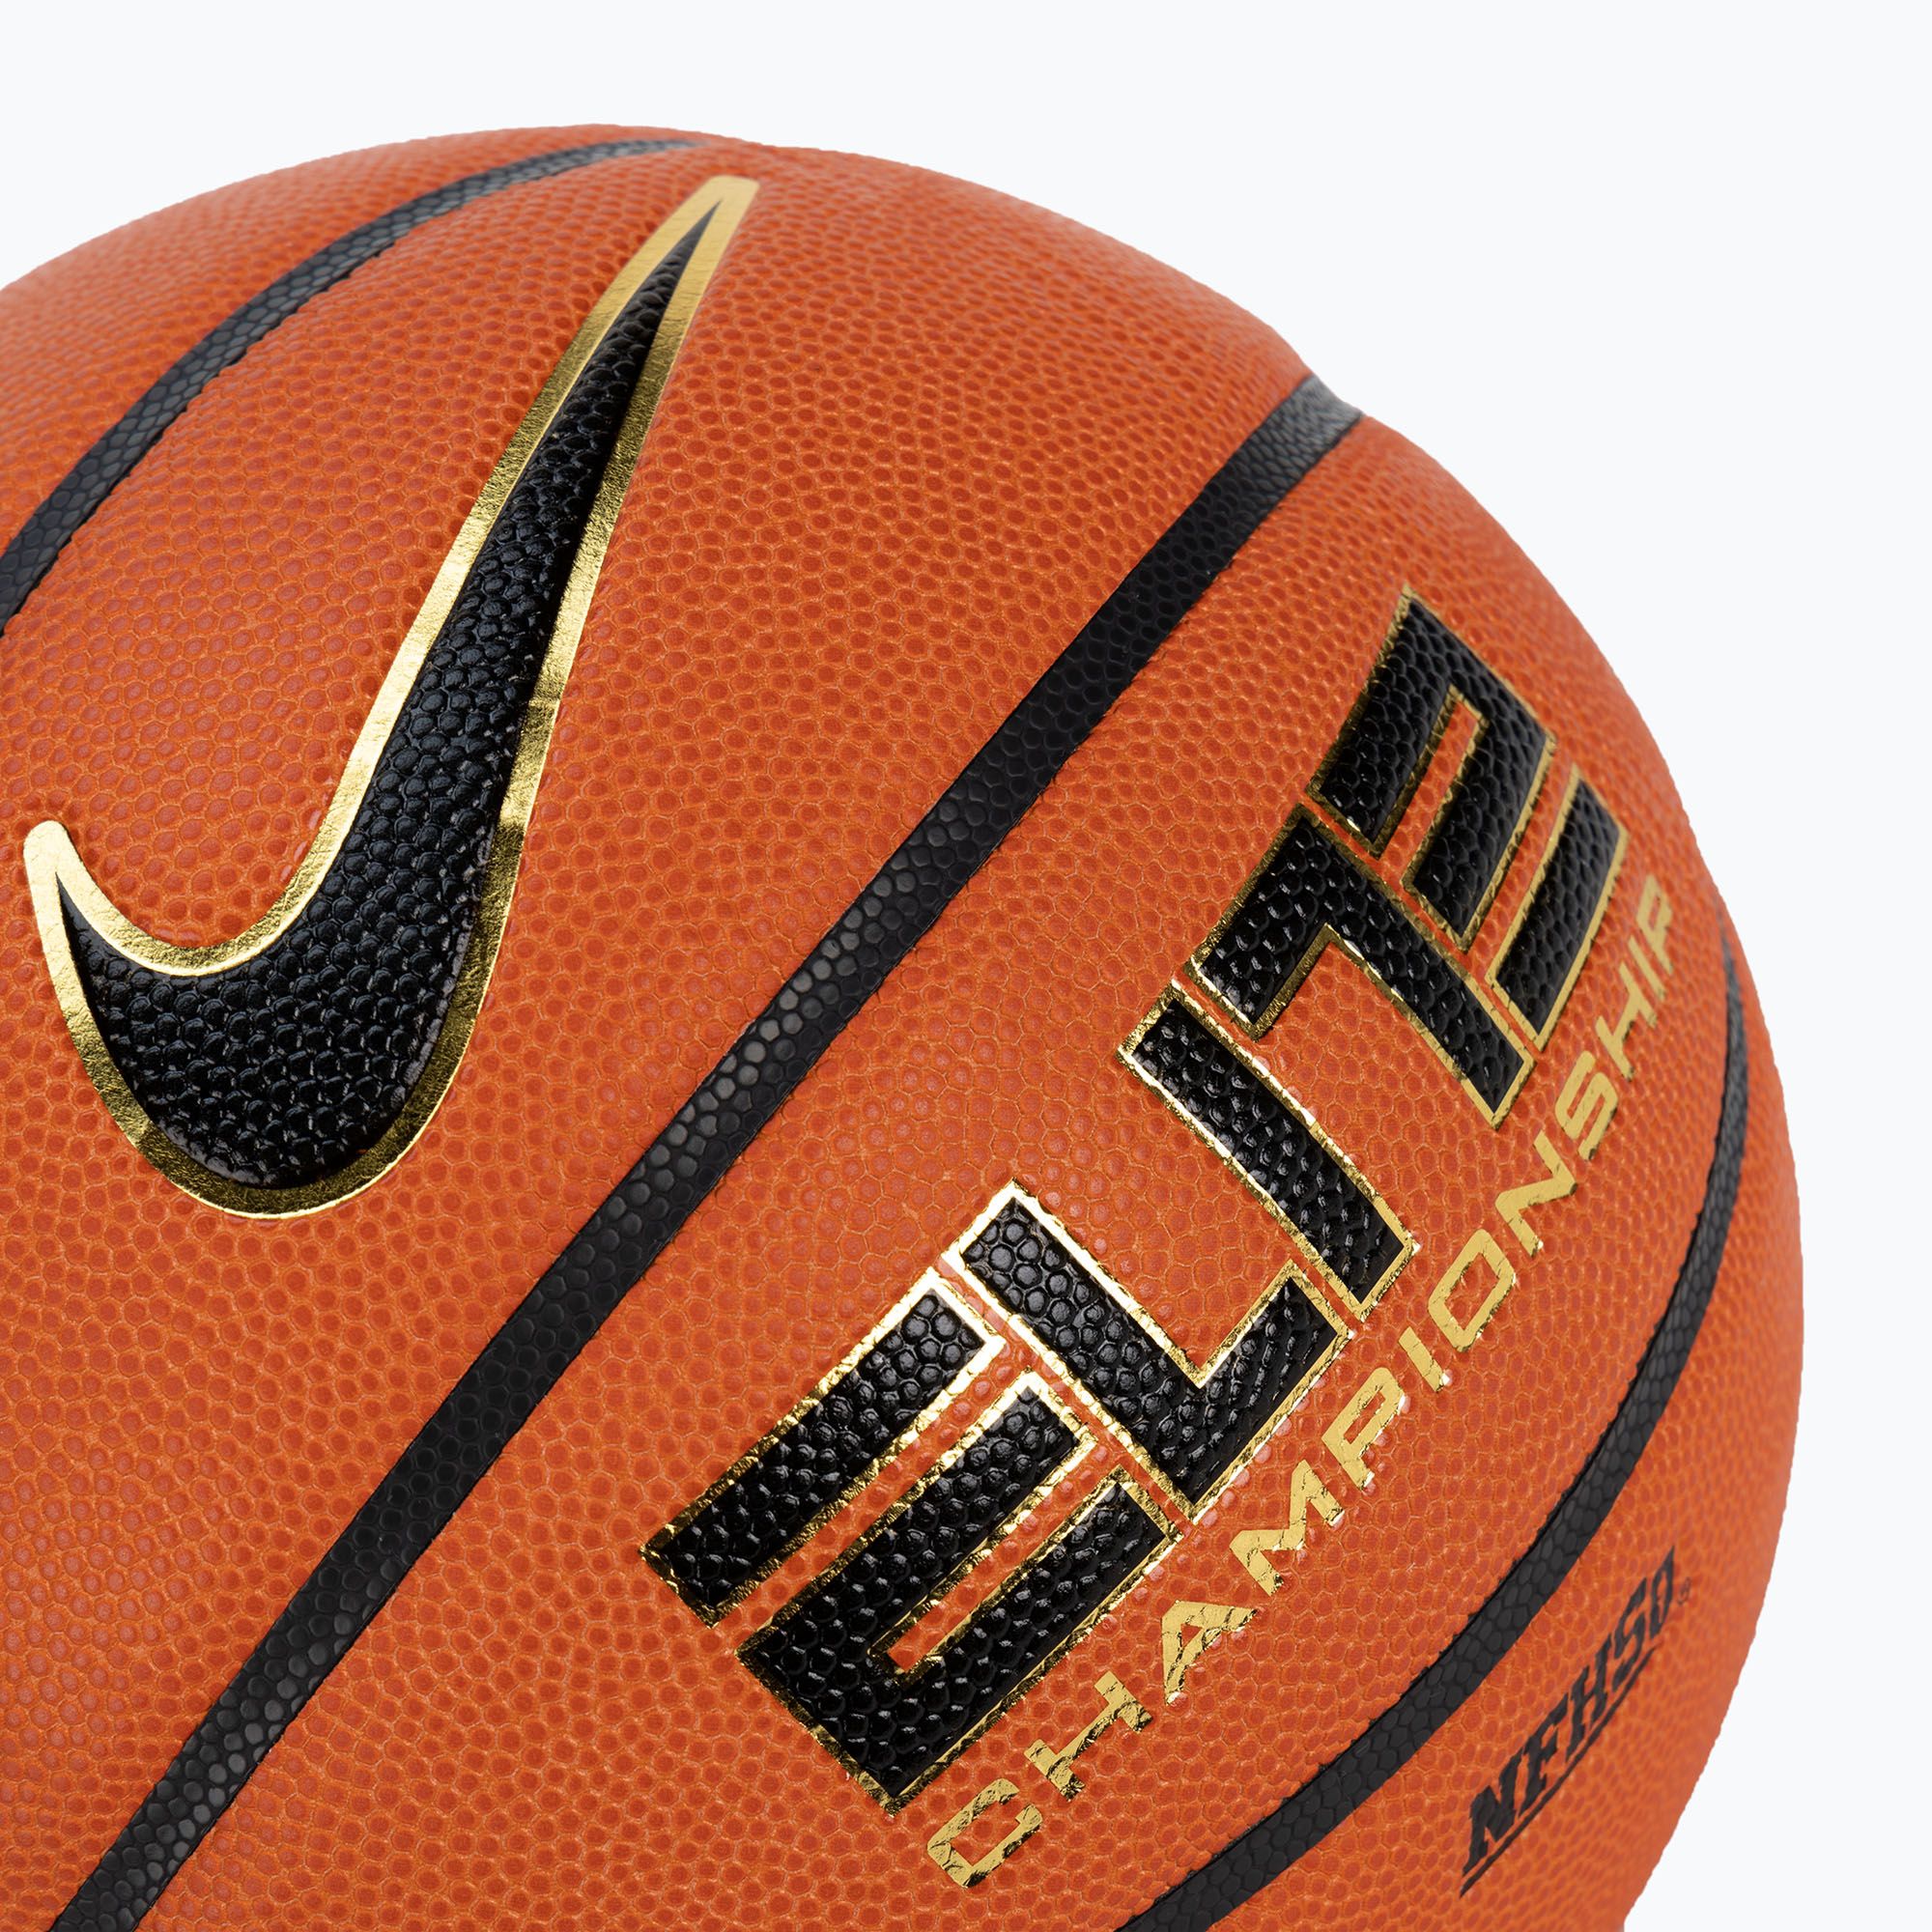 Piłka do koszykówki Nike Elite Championship 8P 2.0 Deflated amber/black/metallic gold rozmiar 6 zdjęcie nr 3